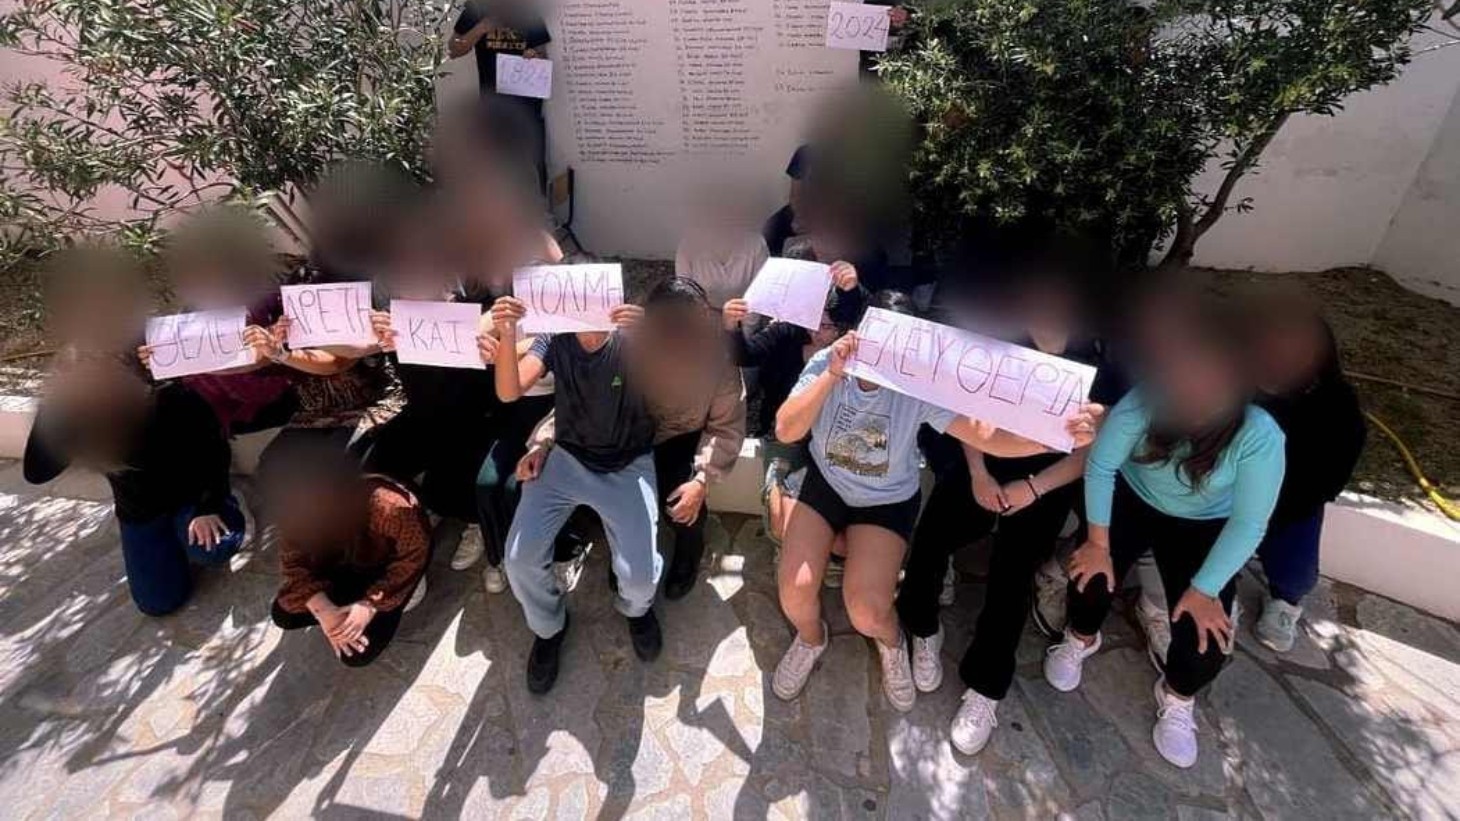 15ο Λύκειο Αθηνών: Αποβολή σε μαθητές γιατί ήθελαν να τραγουδήσουν για τα Τέμπη σε σχολική γιορτή